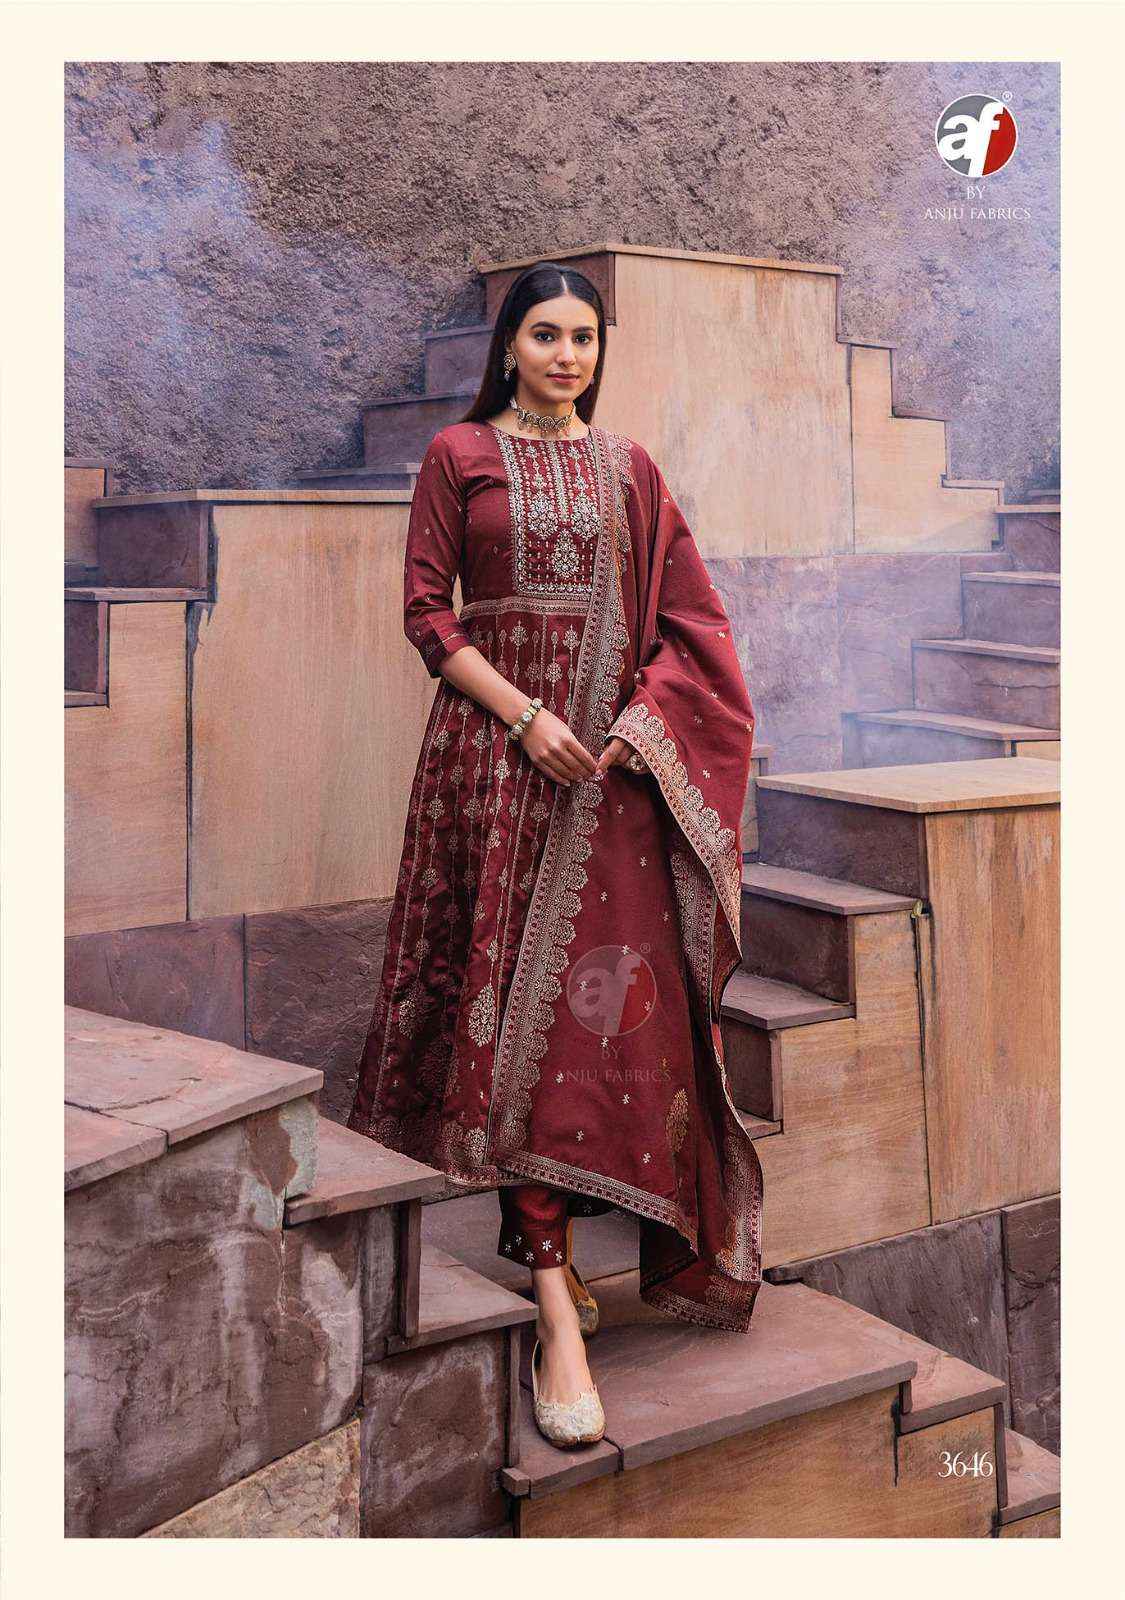 Anju Fabrics Haseen Pal Vol 9 Banarsi Silk Kurti Combo 6 pcs Catalogue